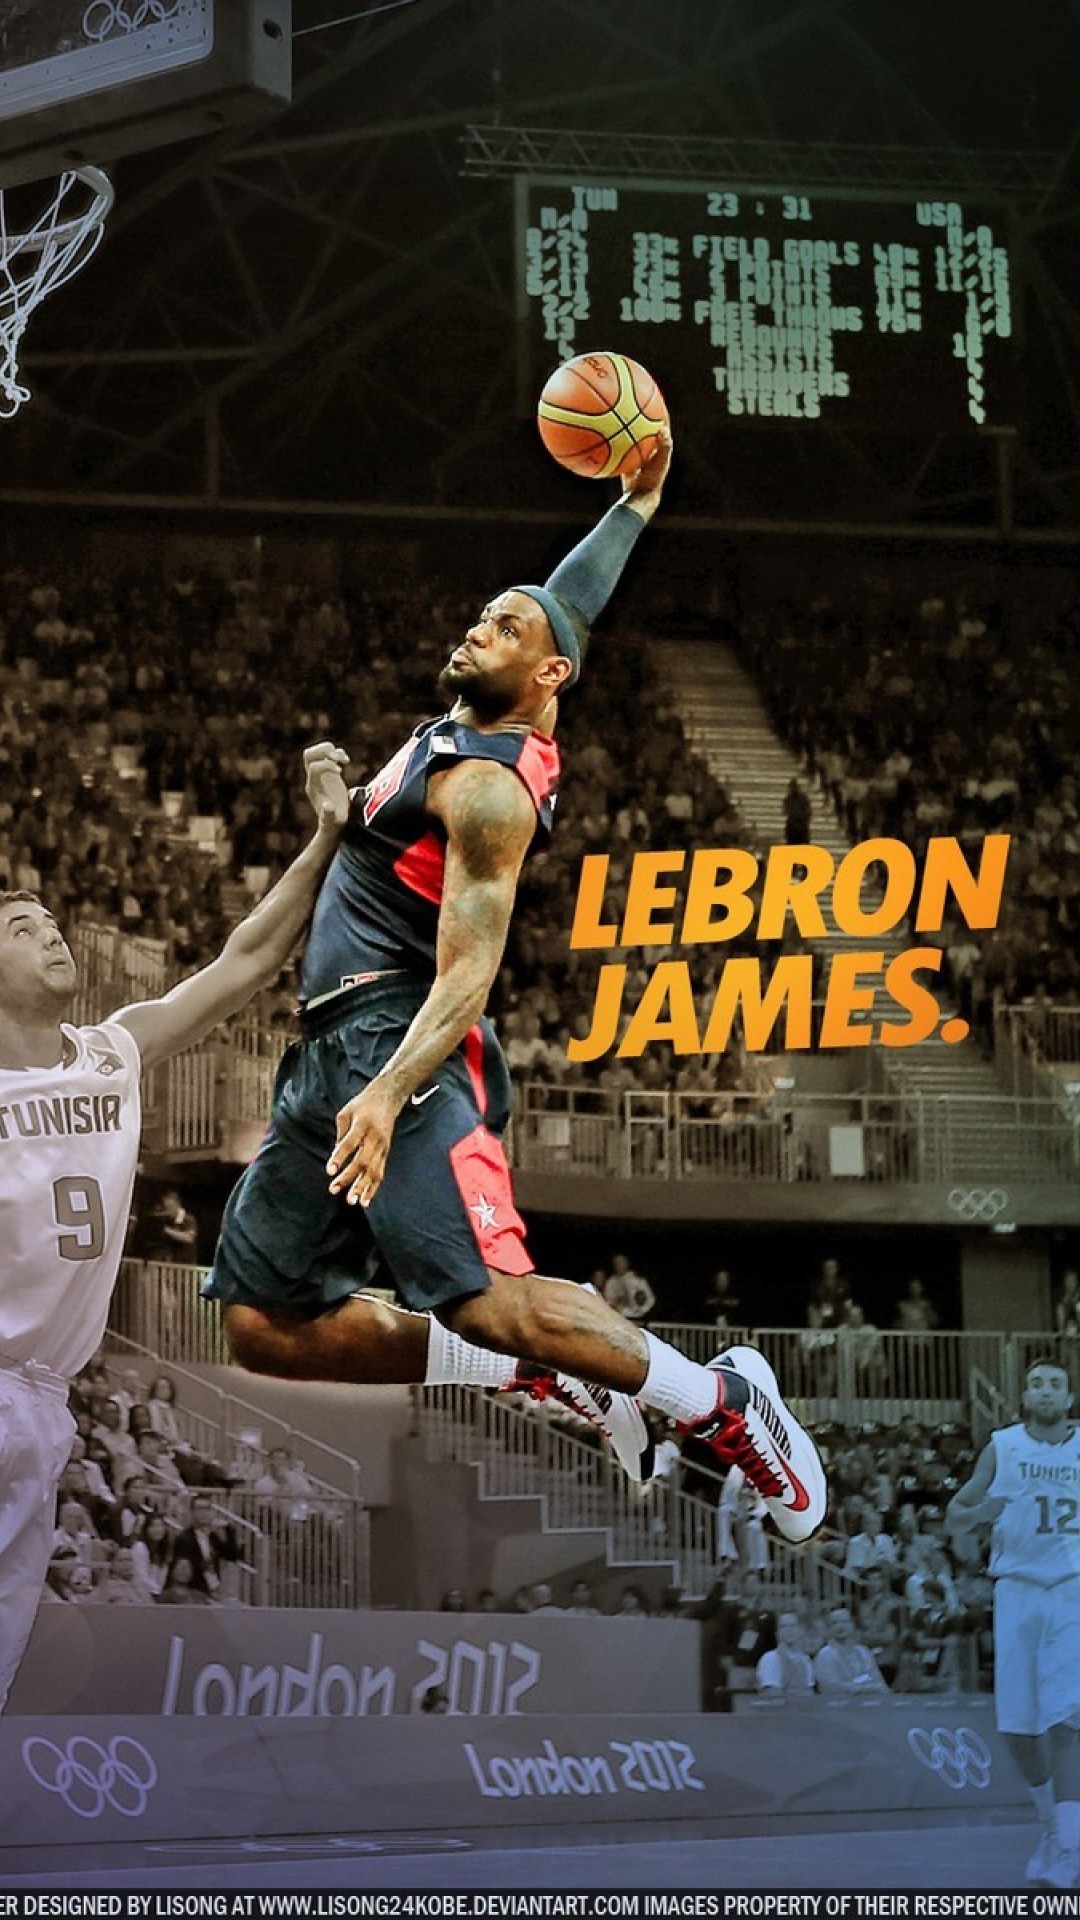 르브론 제임스 최고 배경,농구 선수,농구 움직임,농구,스포츠,슬램 덩크